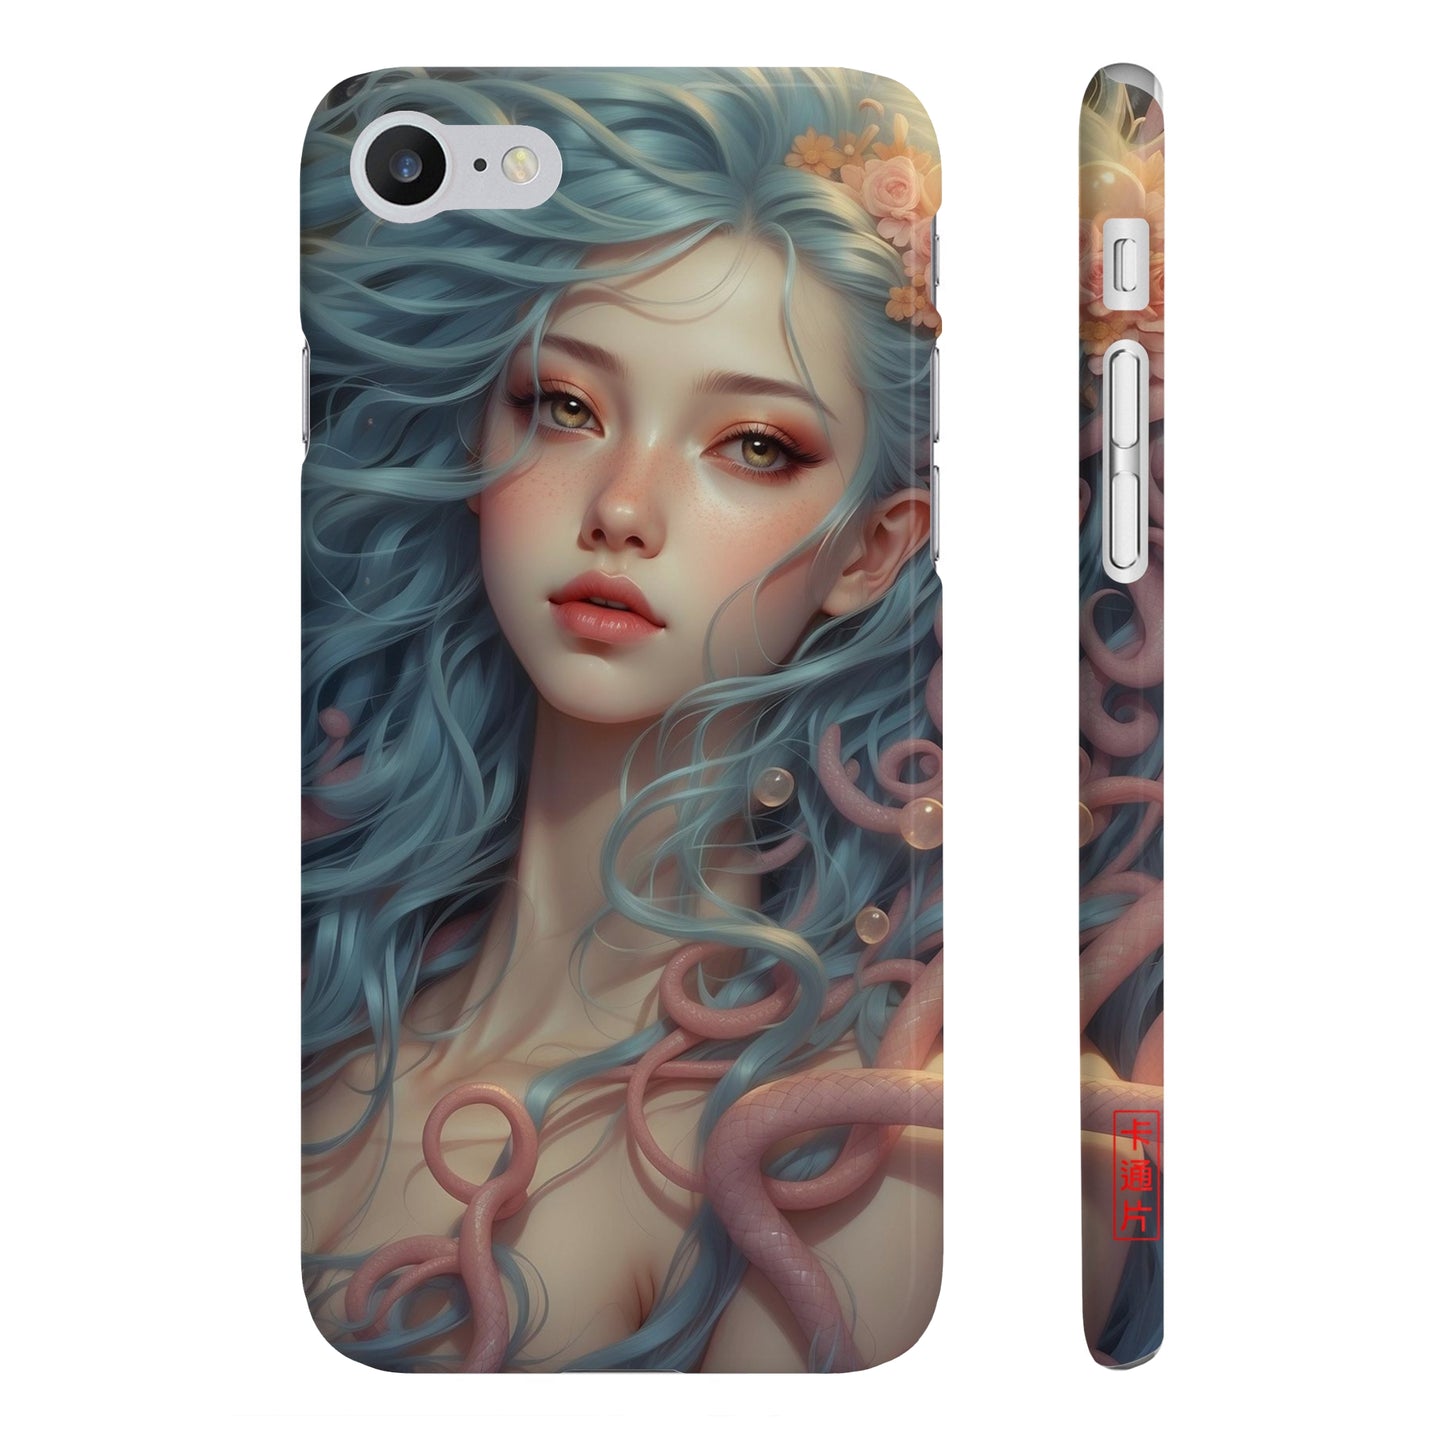 Kǎtōng Piàn - Mermaid Collection - 064 - Slim Phone Cases Printify